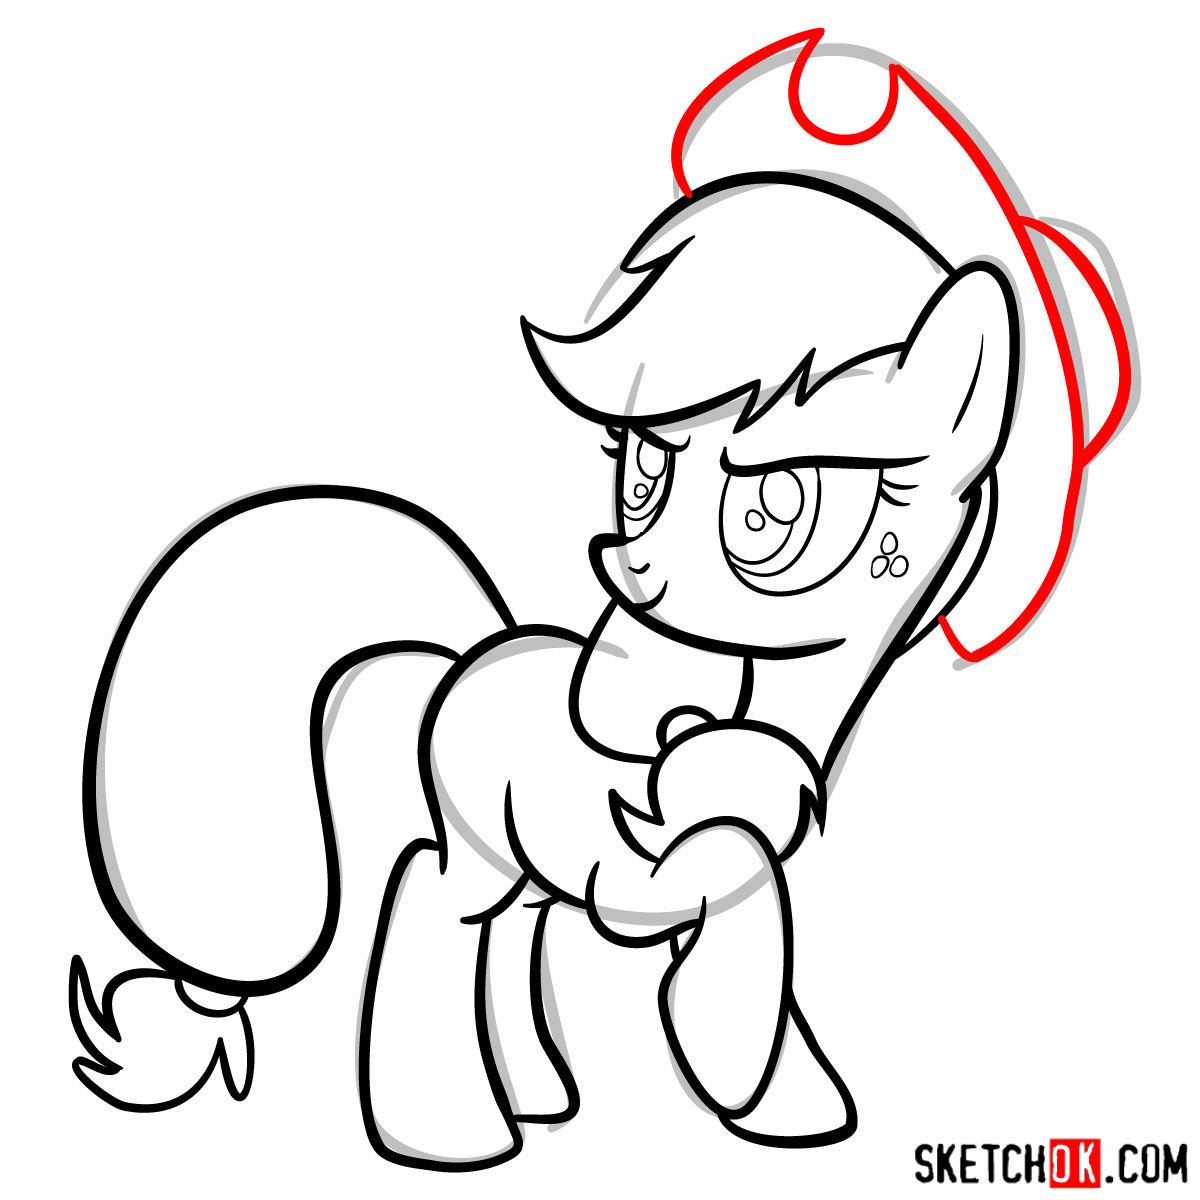 How to draw Applejack pony - step 13